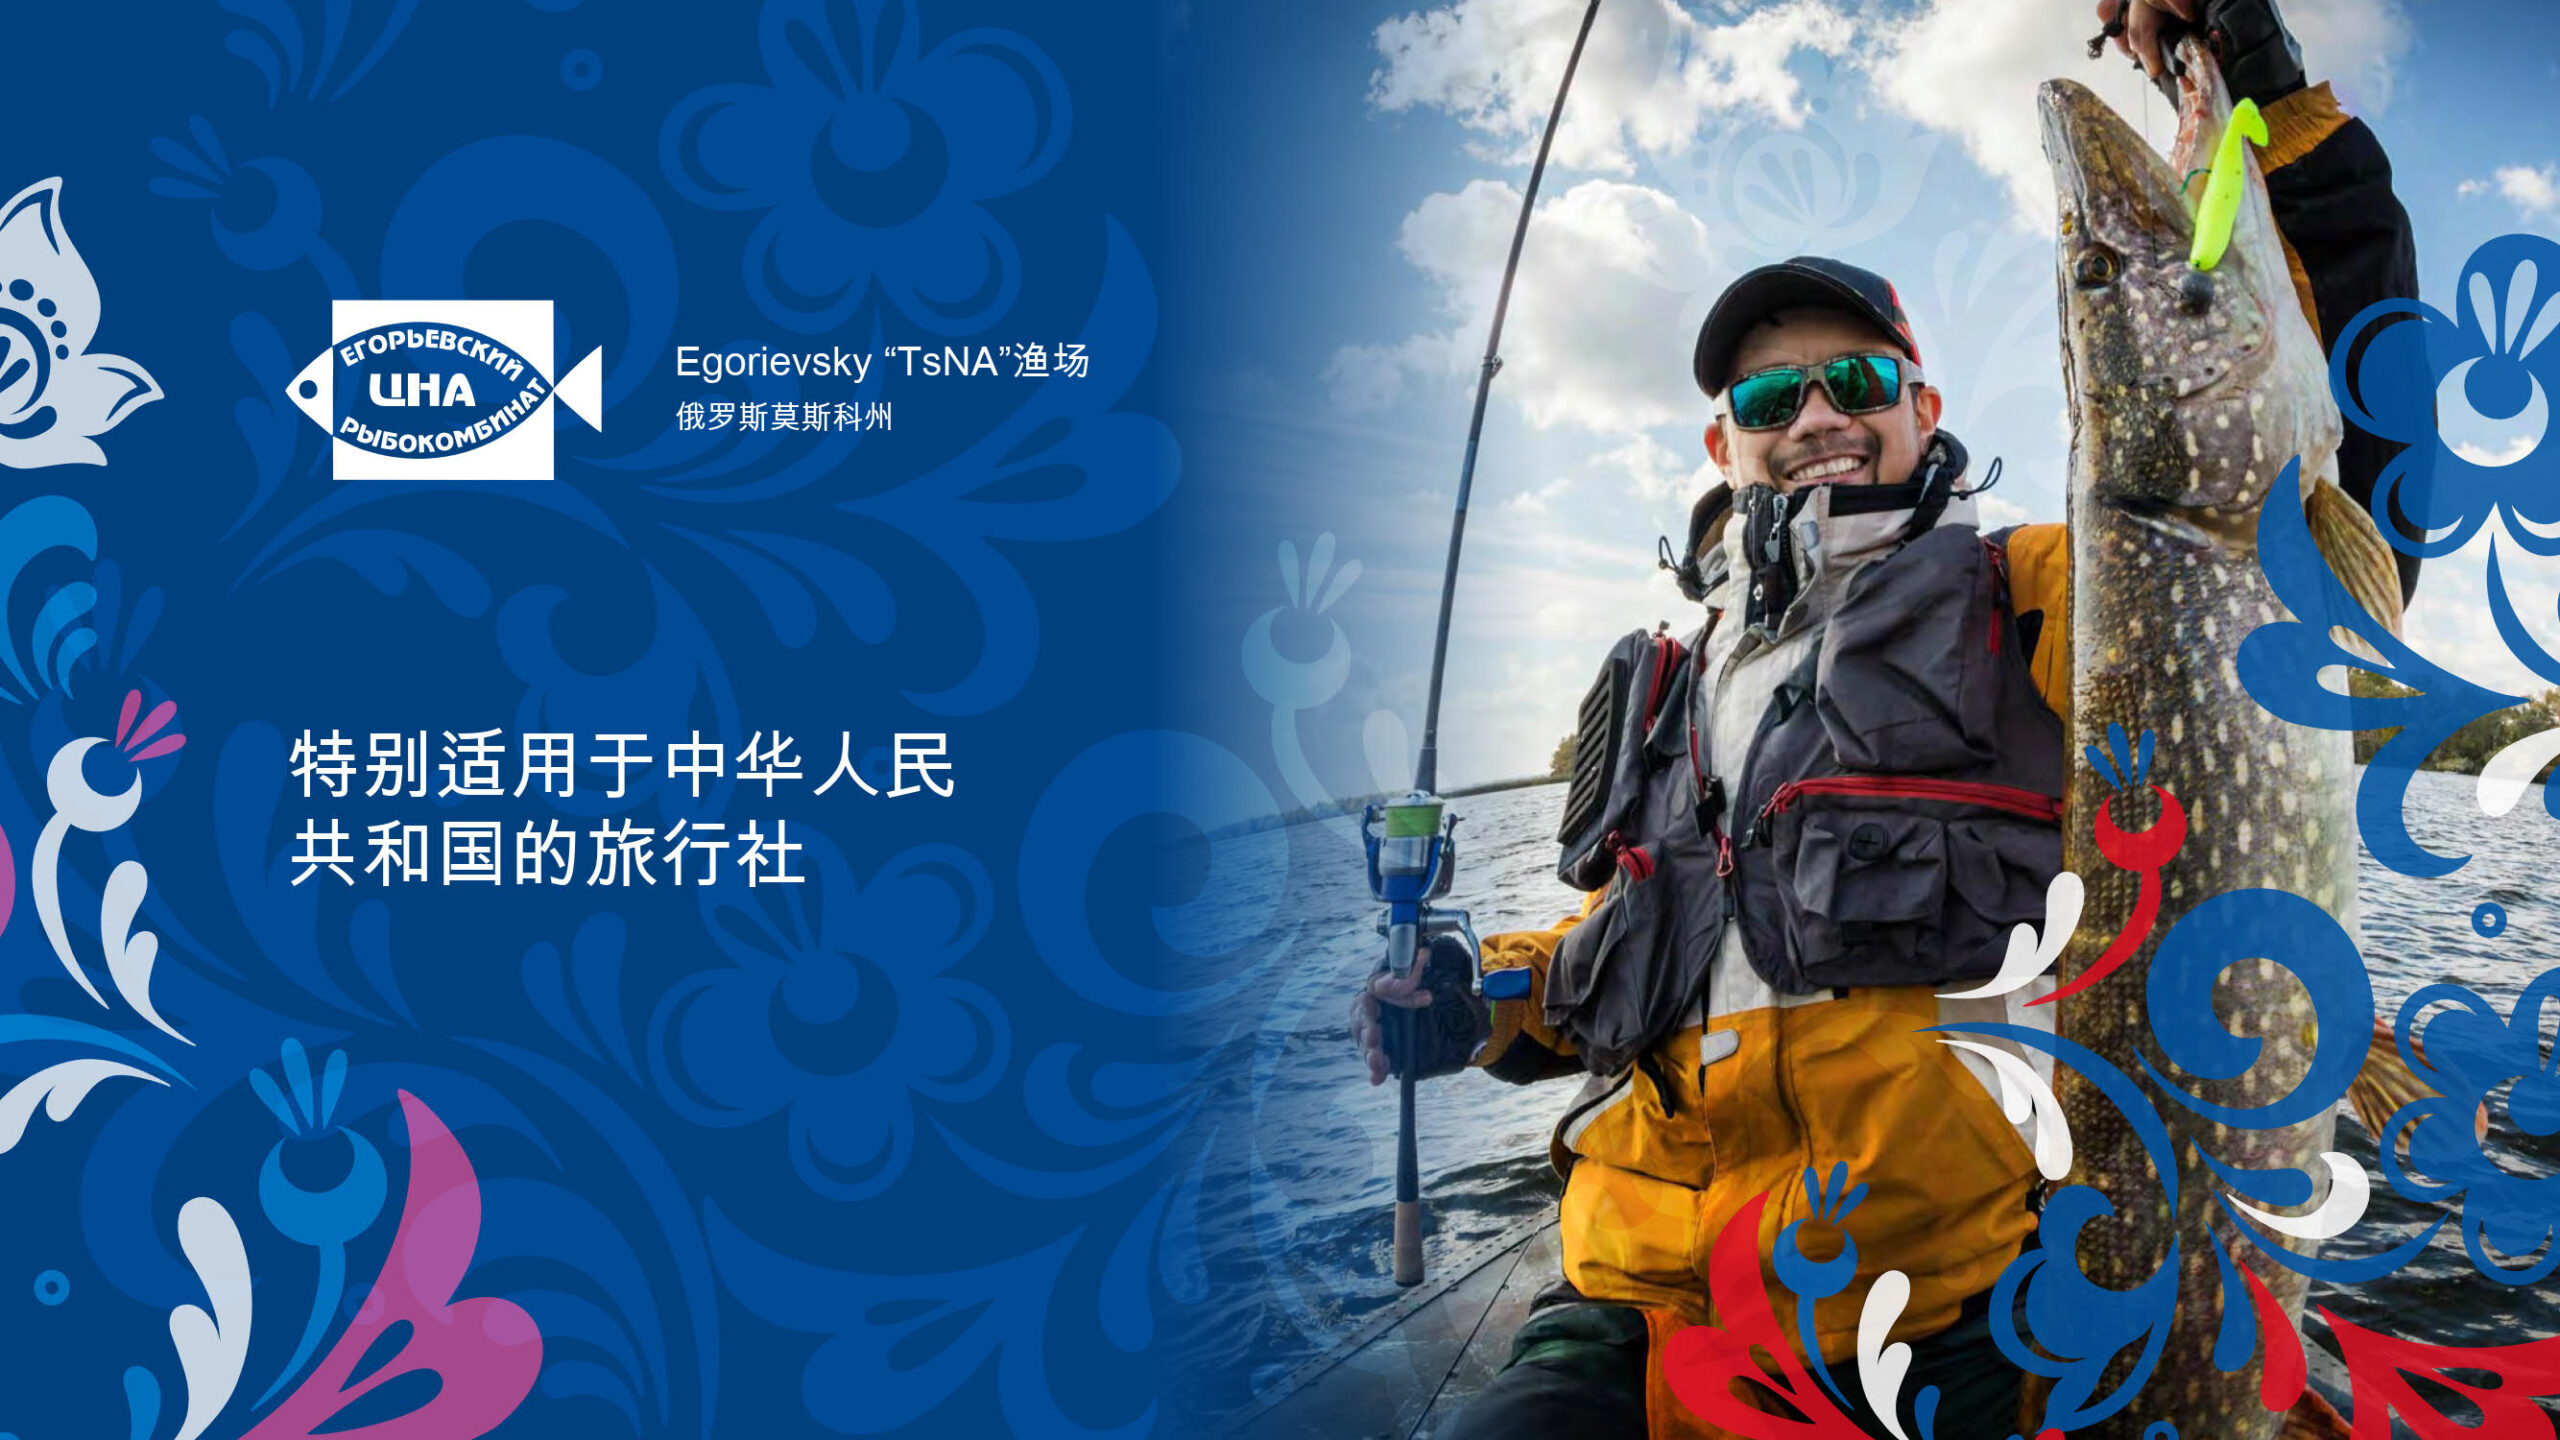 Презентация услуг «Егорьевского рыбкомбината «ЦНА» на китайском языке слайд 1